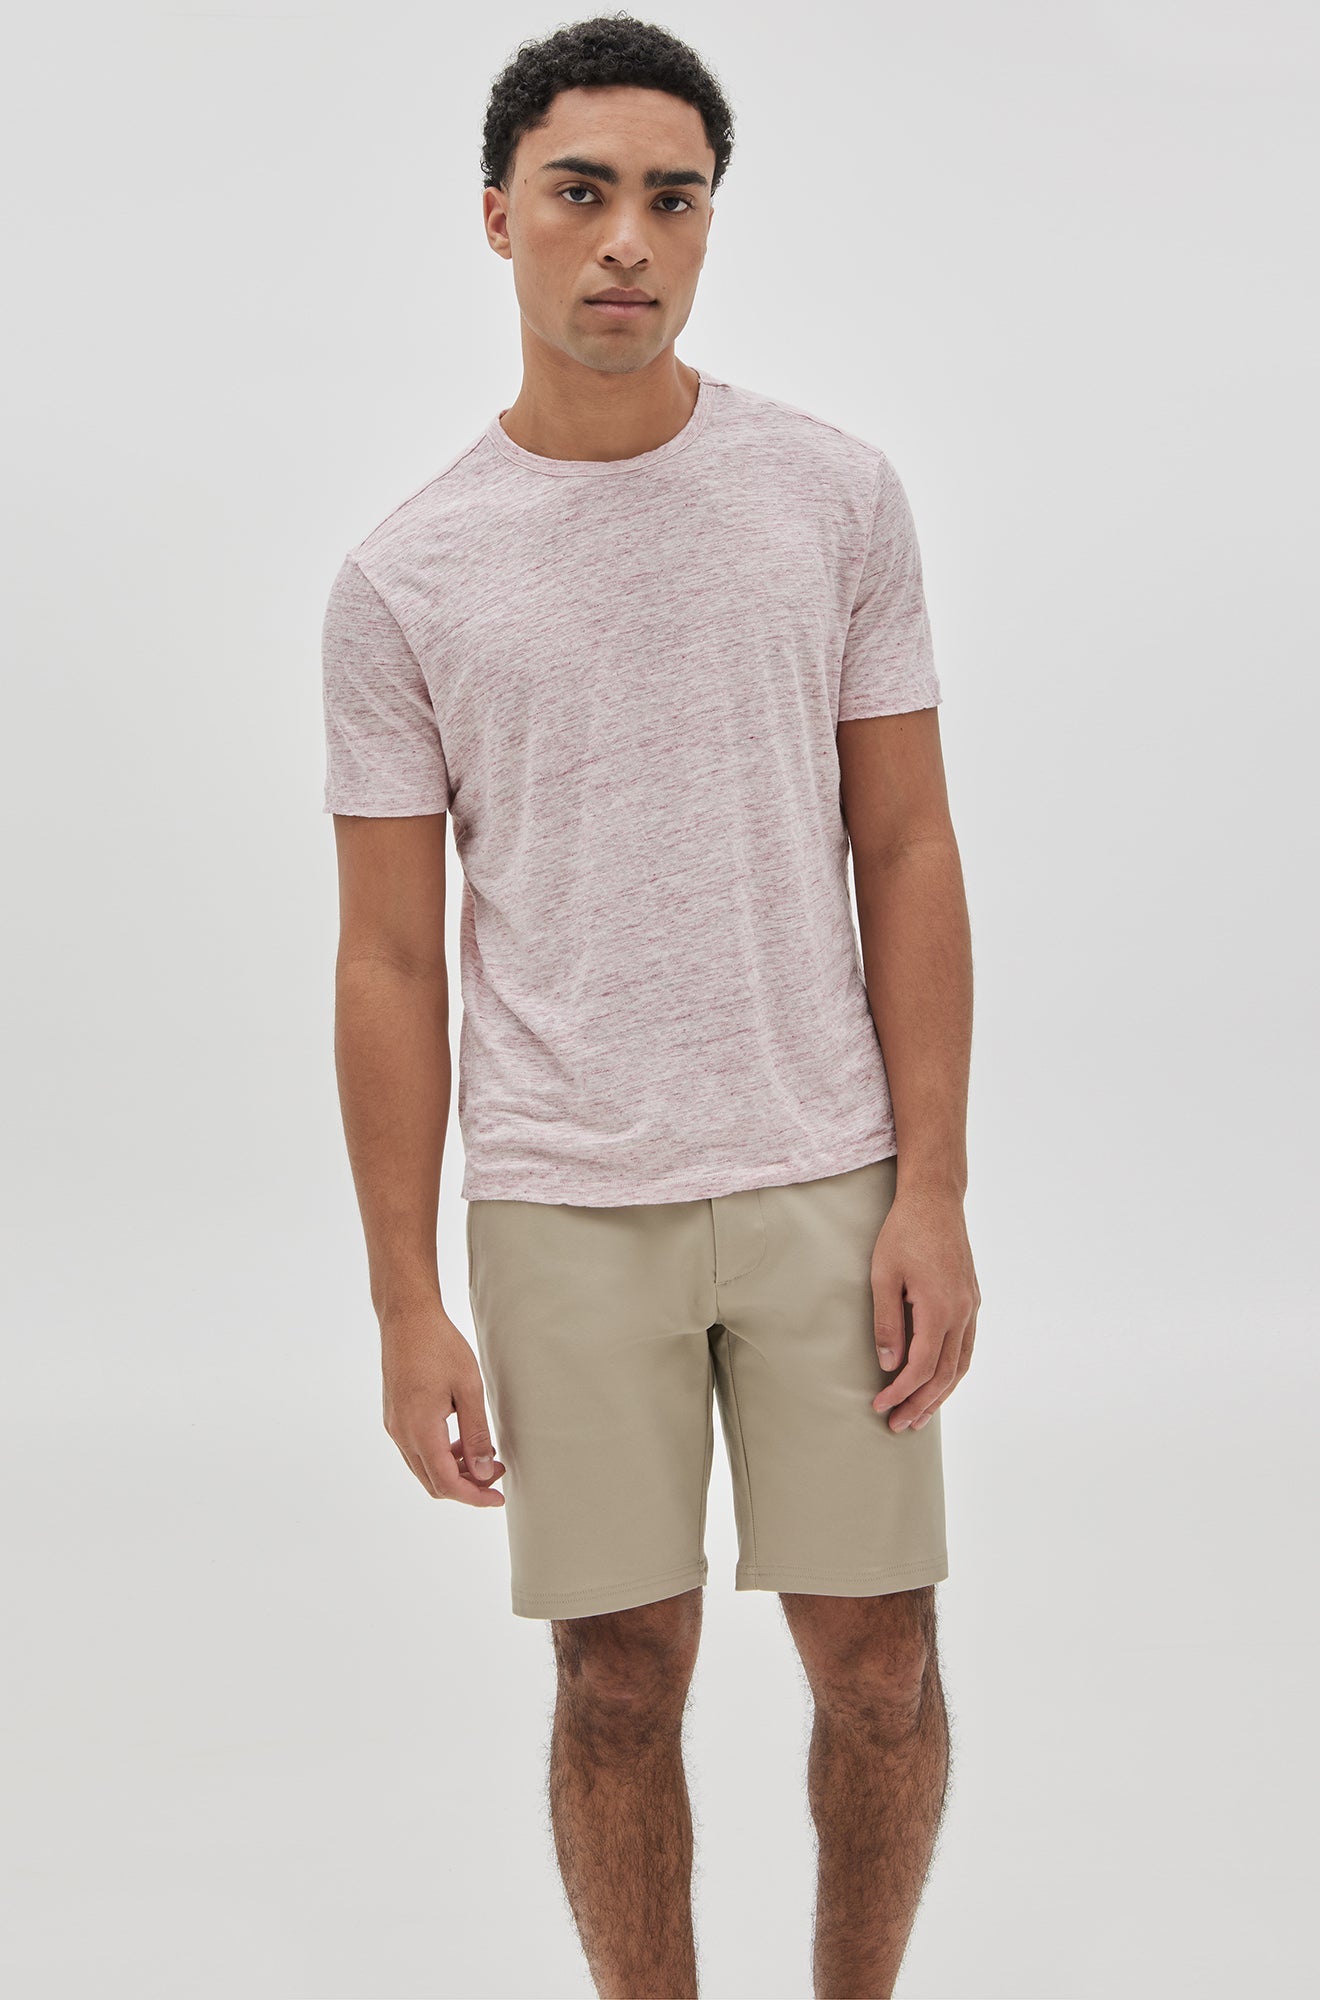 T-Shirt pour homme par Robert Barakett | RB31087/Blue Hill Rose/Pink| Machemise.ca, vêtements mode pour hommes